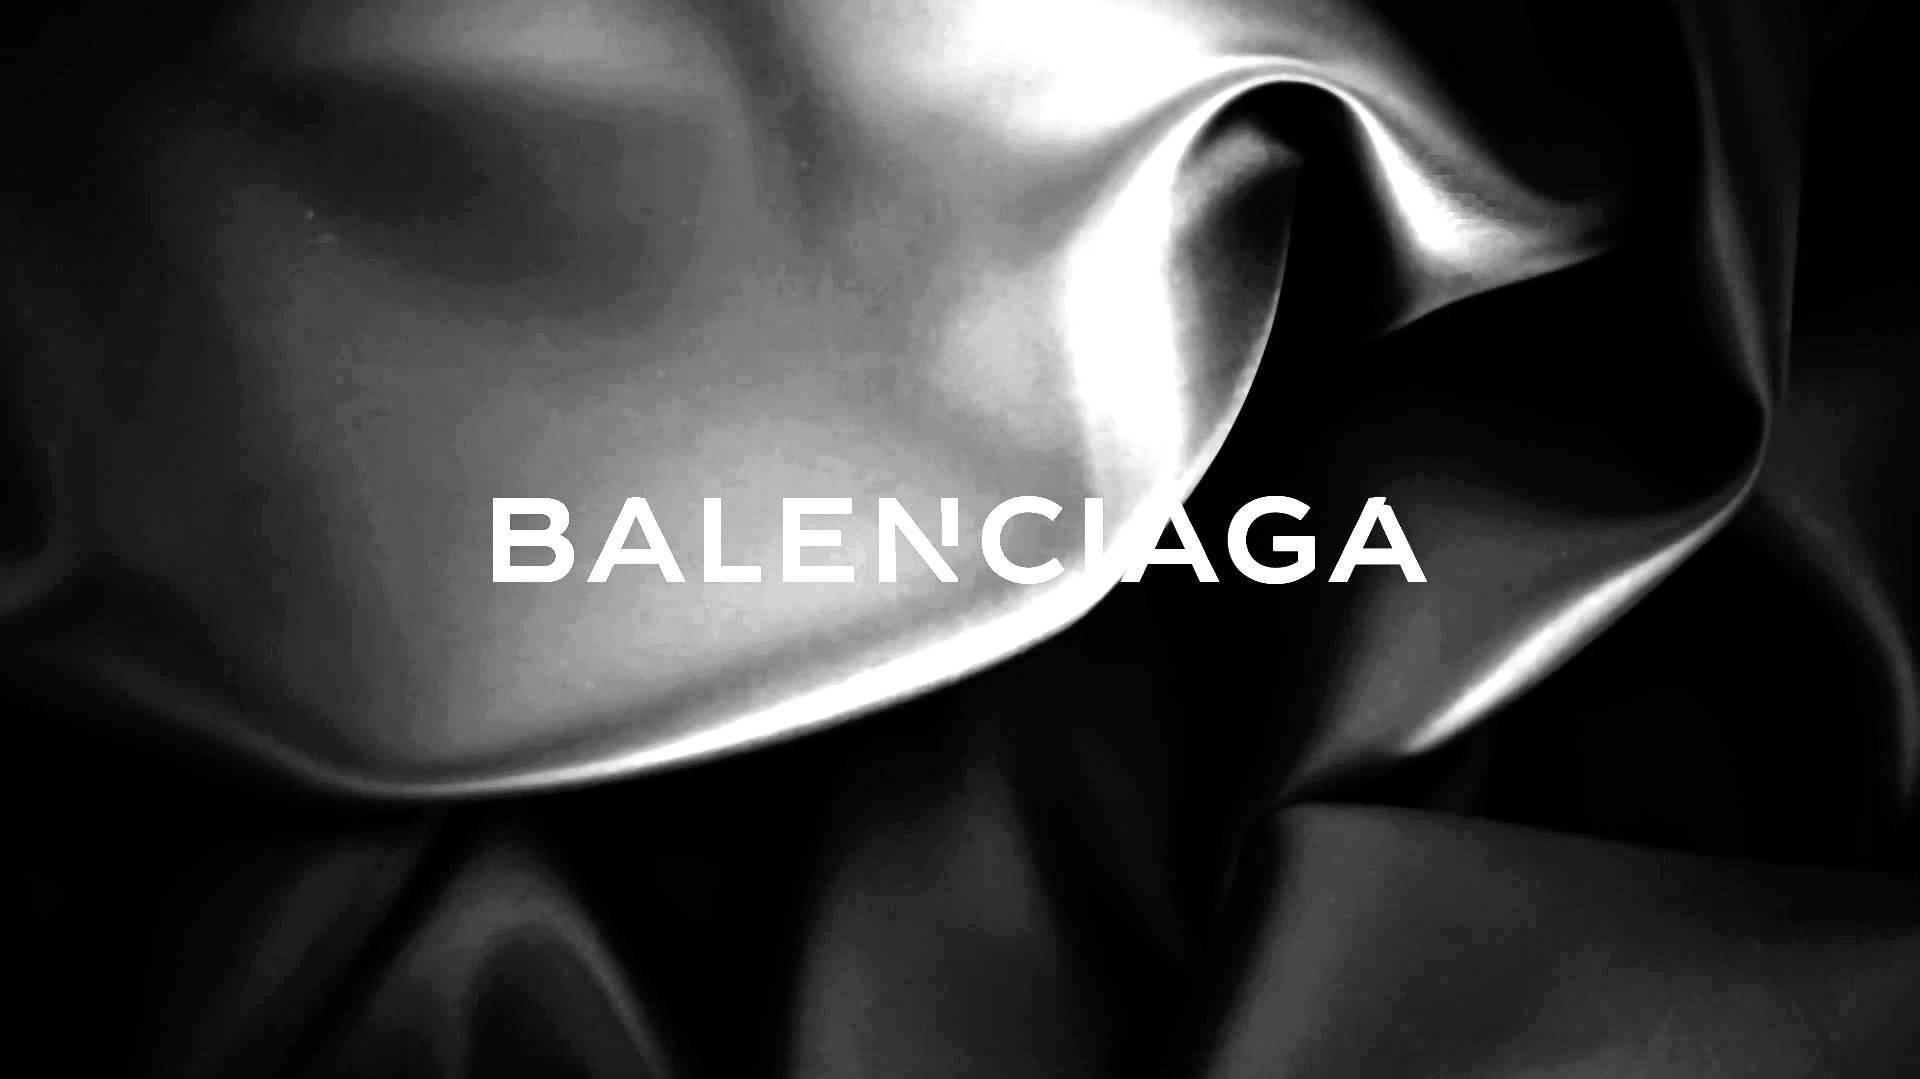 Balenciaga Wallpapers